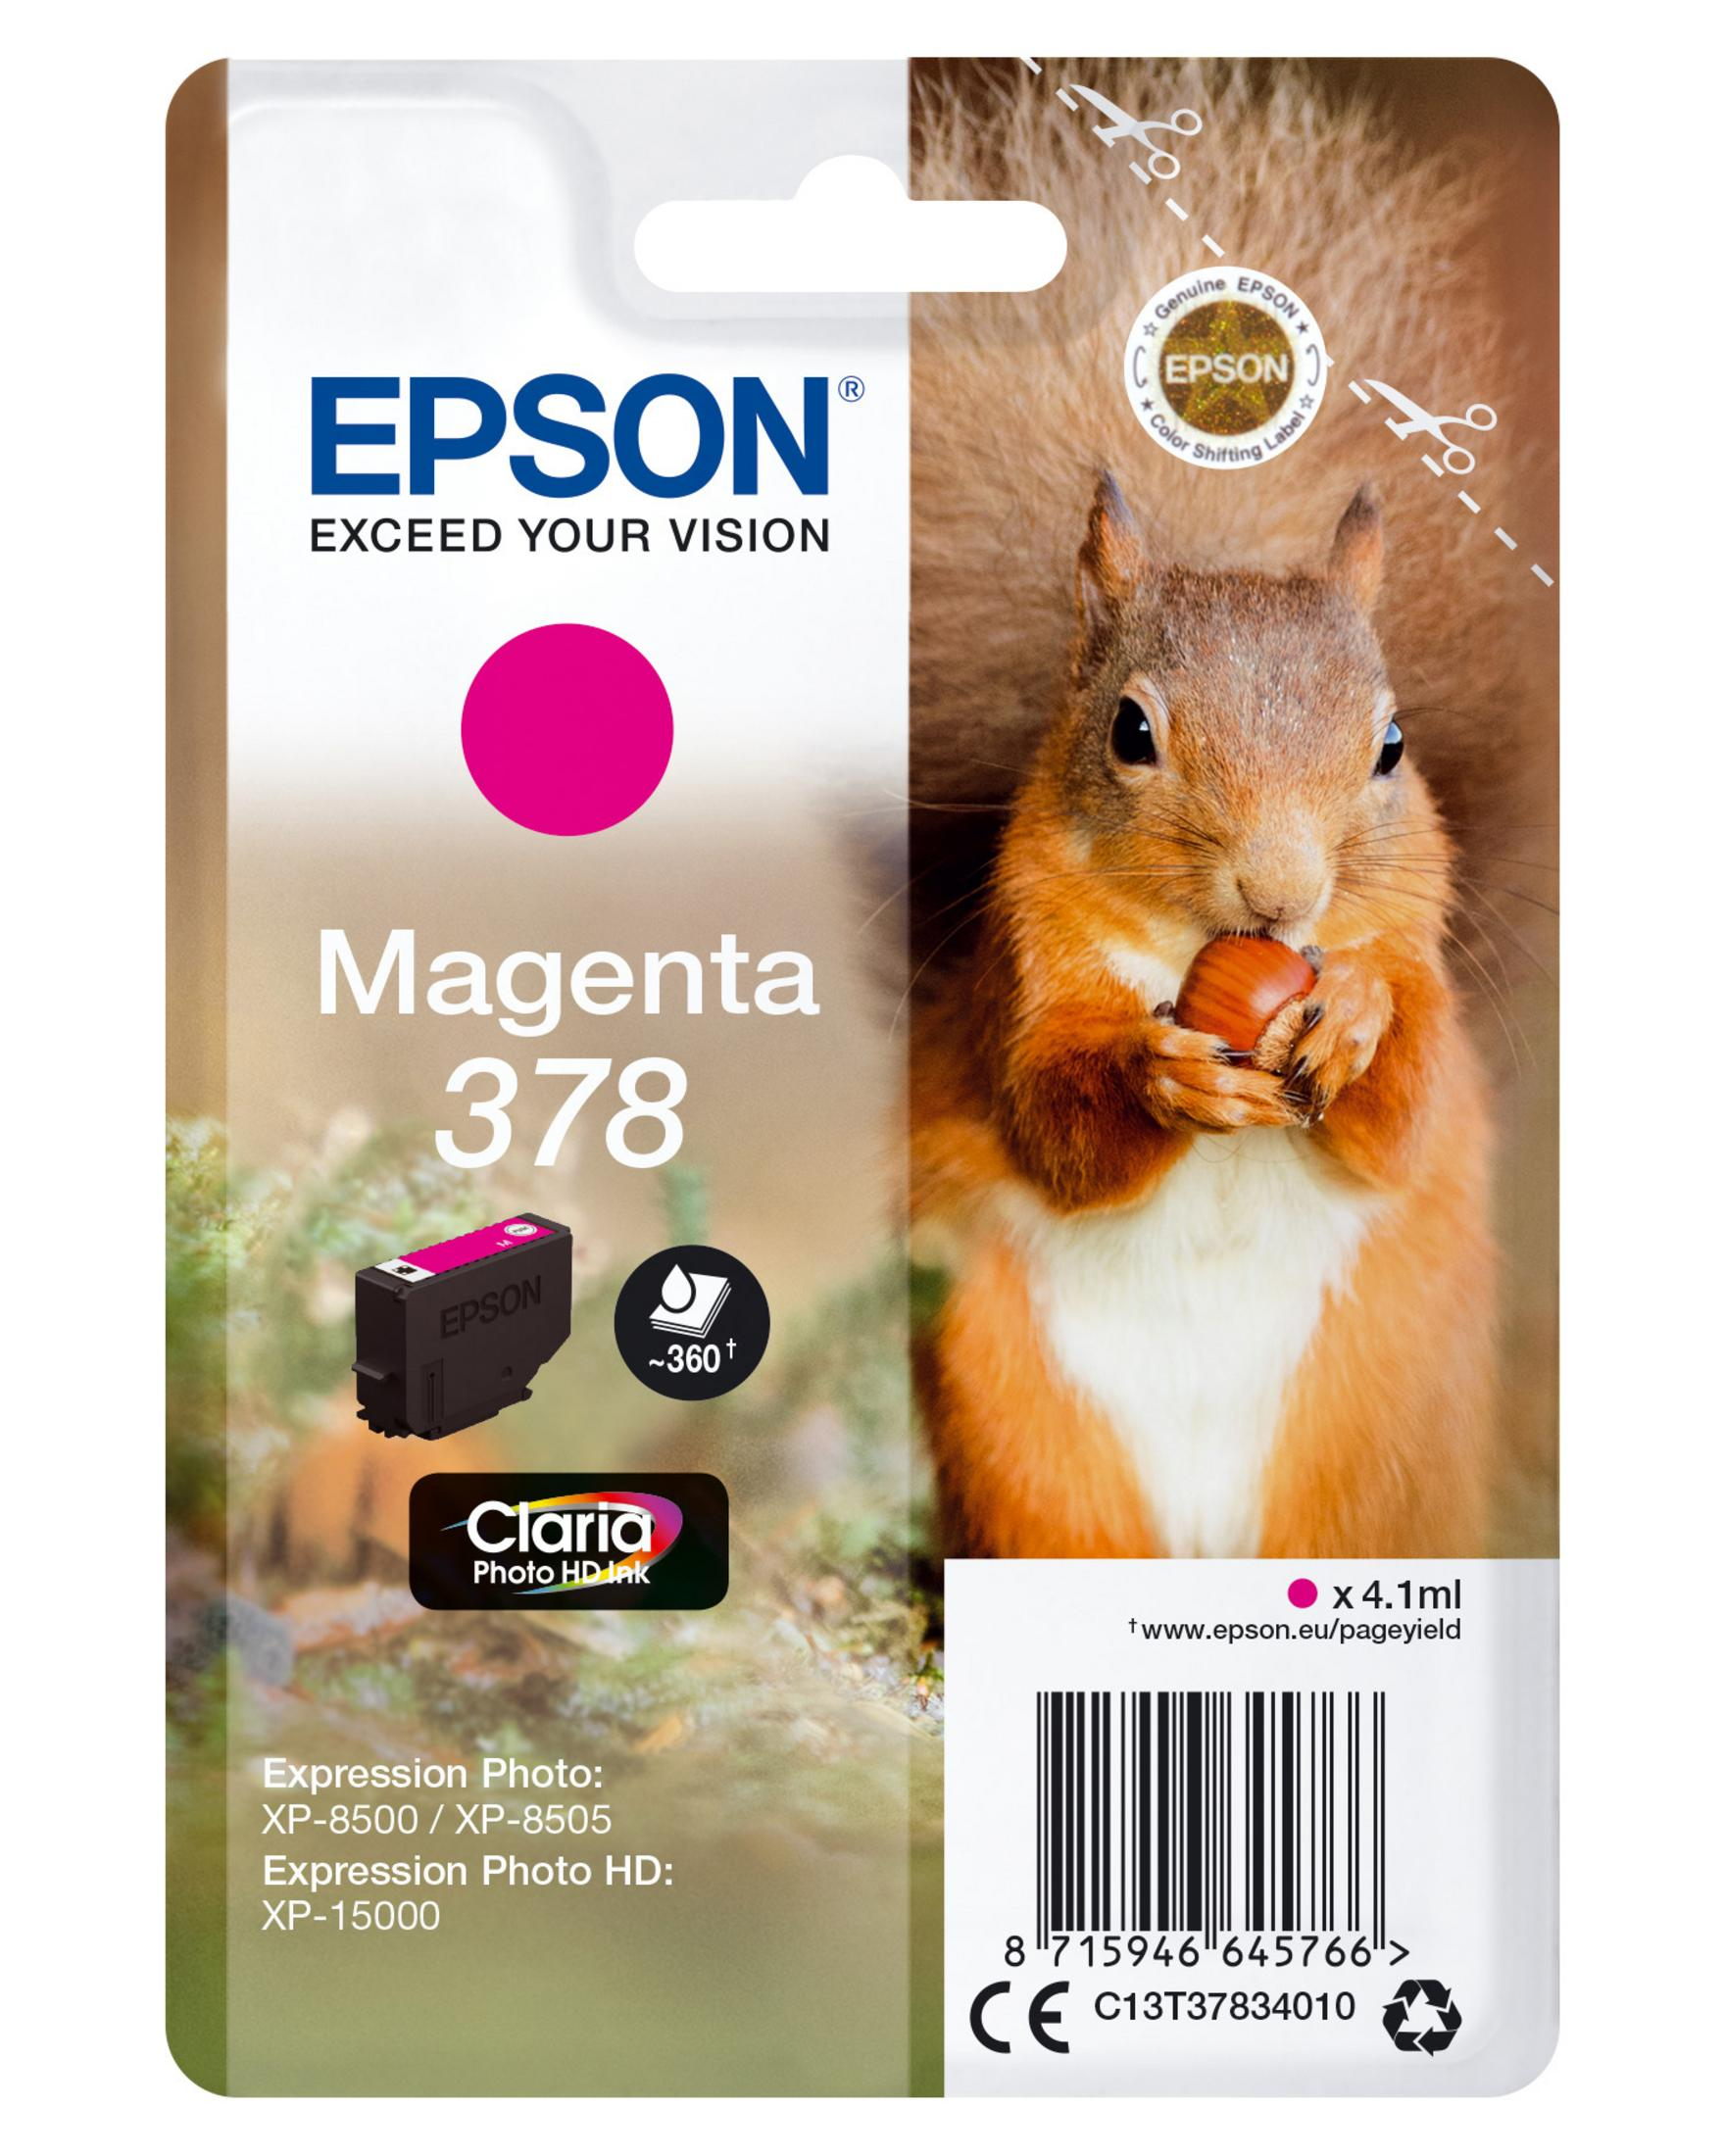 EPSON 378 Tinte magenta (C13T37834010)